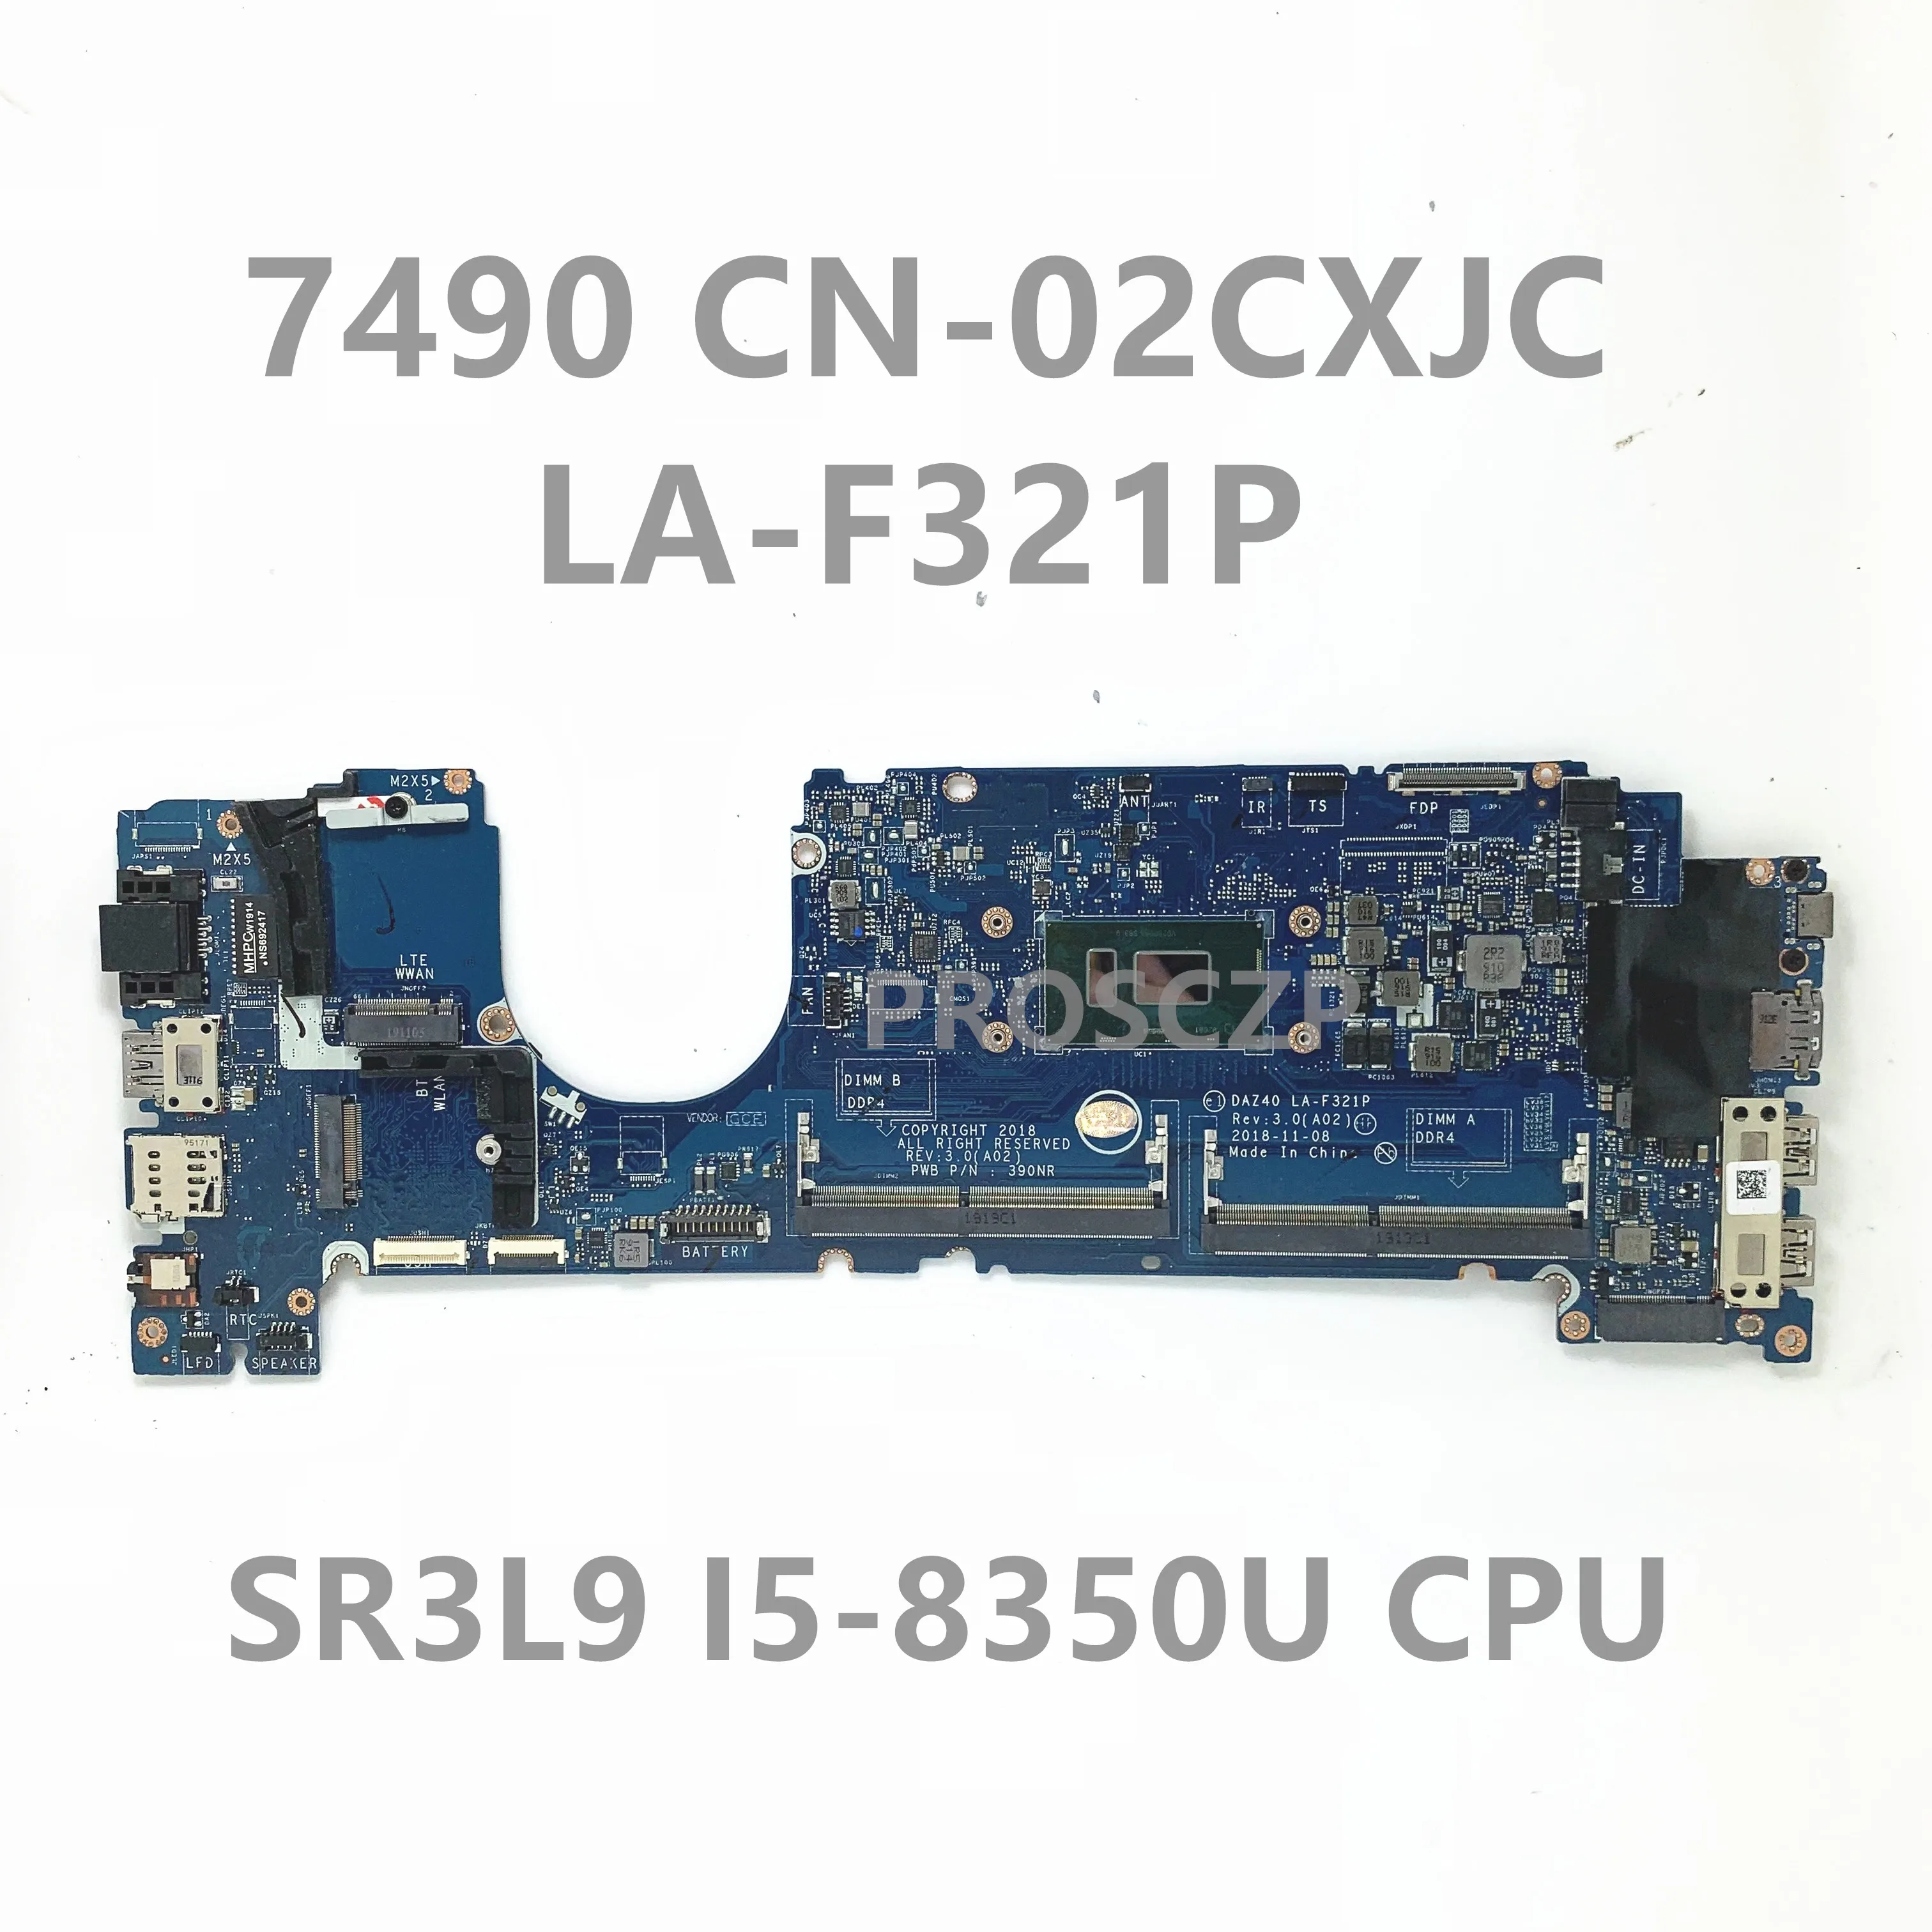 Материнская плата CN-02CXJC 02CXJC 2CXJC Для ноутбука DELL 7490 Материнская Плата DAZ40 LA-F321P С процессором SR3L9 I5-8350U 100% Полностью Работает хорошо Изображение 0